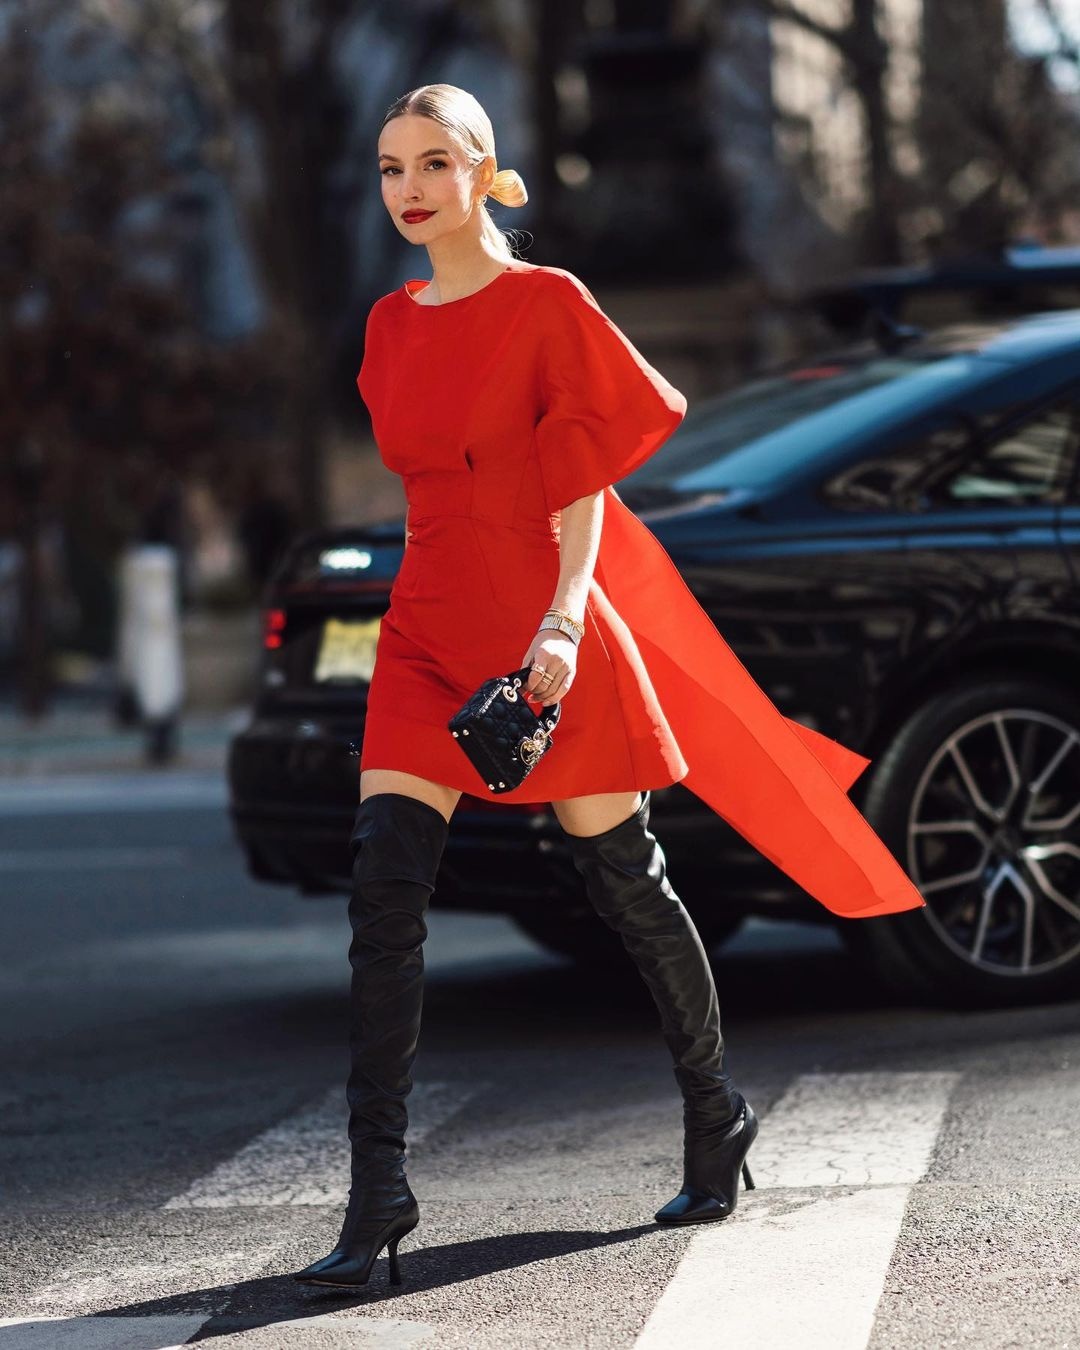 Bản “song tấu” này được coi là hiện thân của niềm đam mê, sự khao khát mãnh liệt. Vì vậy nếu muốn nổi bật hết cỡ và là tâm điểm của mọi sự chú ý hãy lựa chọn váy đầm màu đỏ để ghép đôi cùng boots da màu đen.